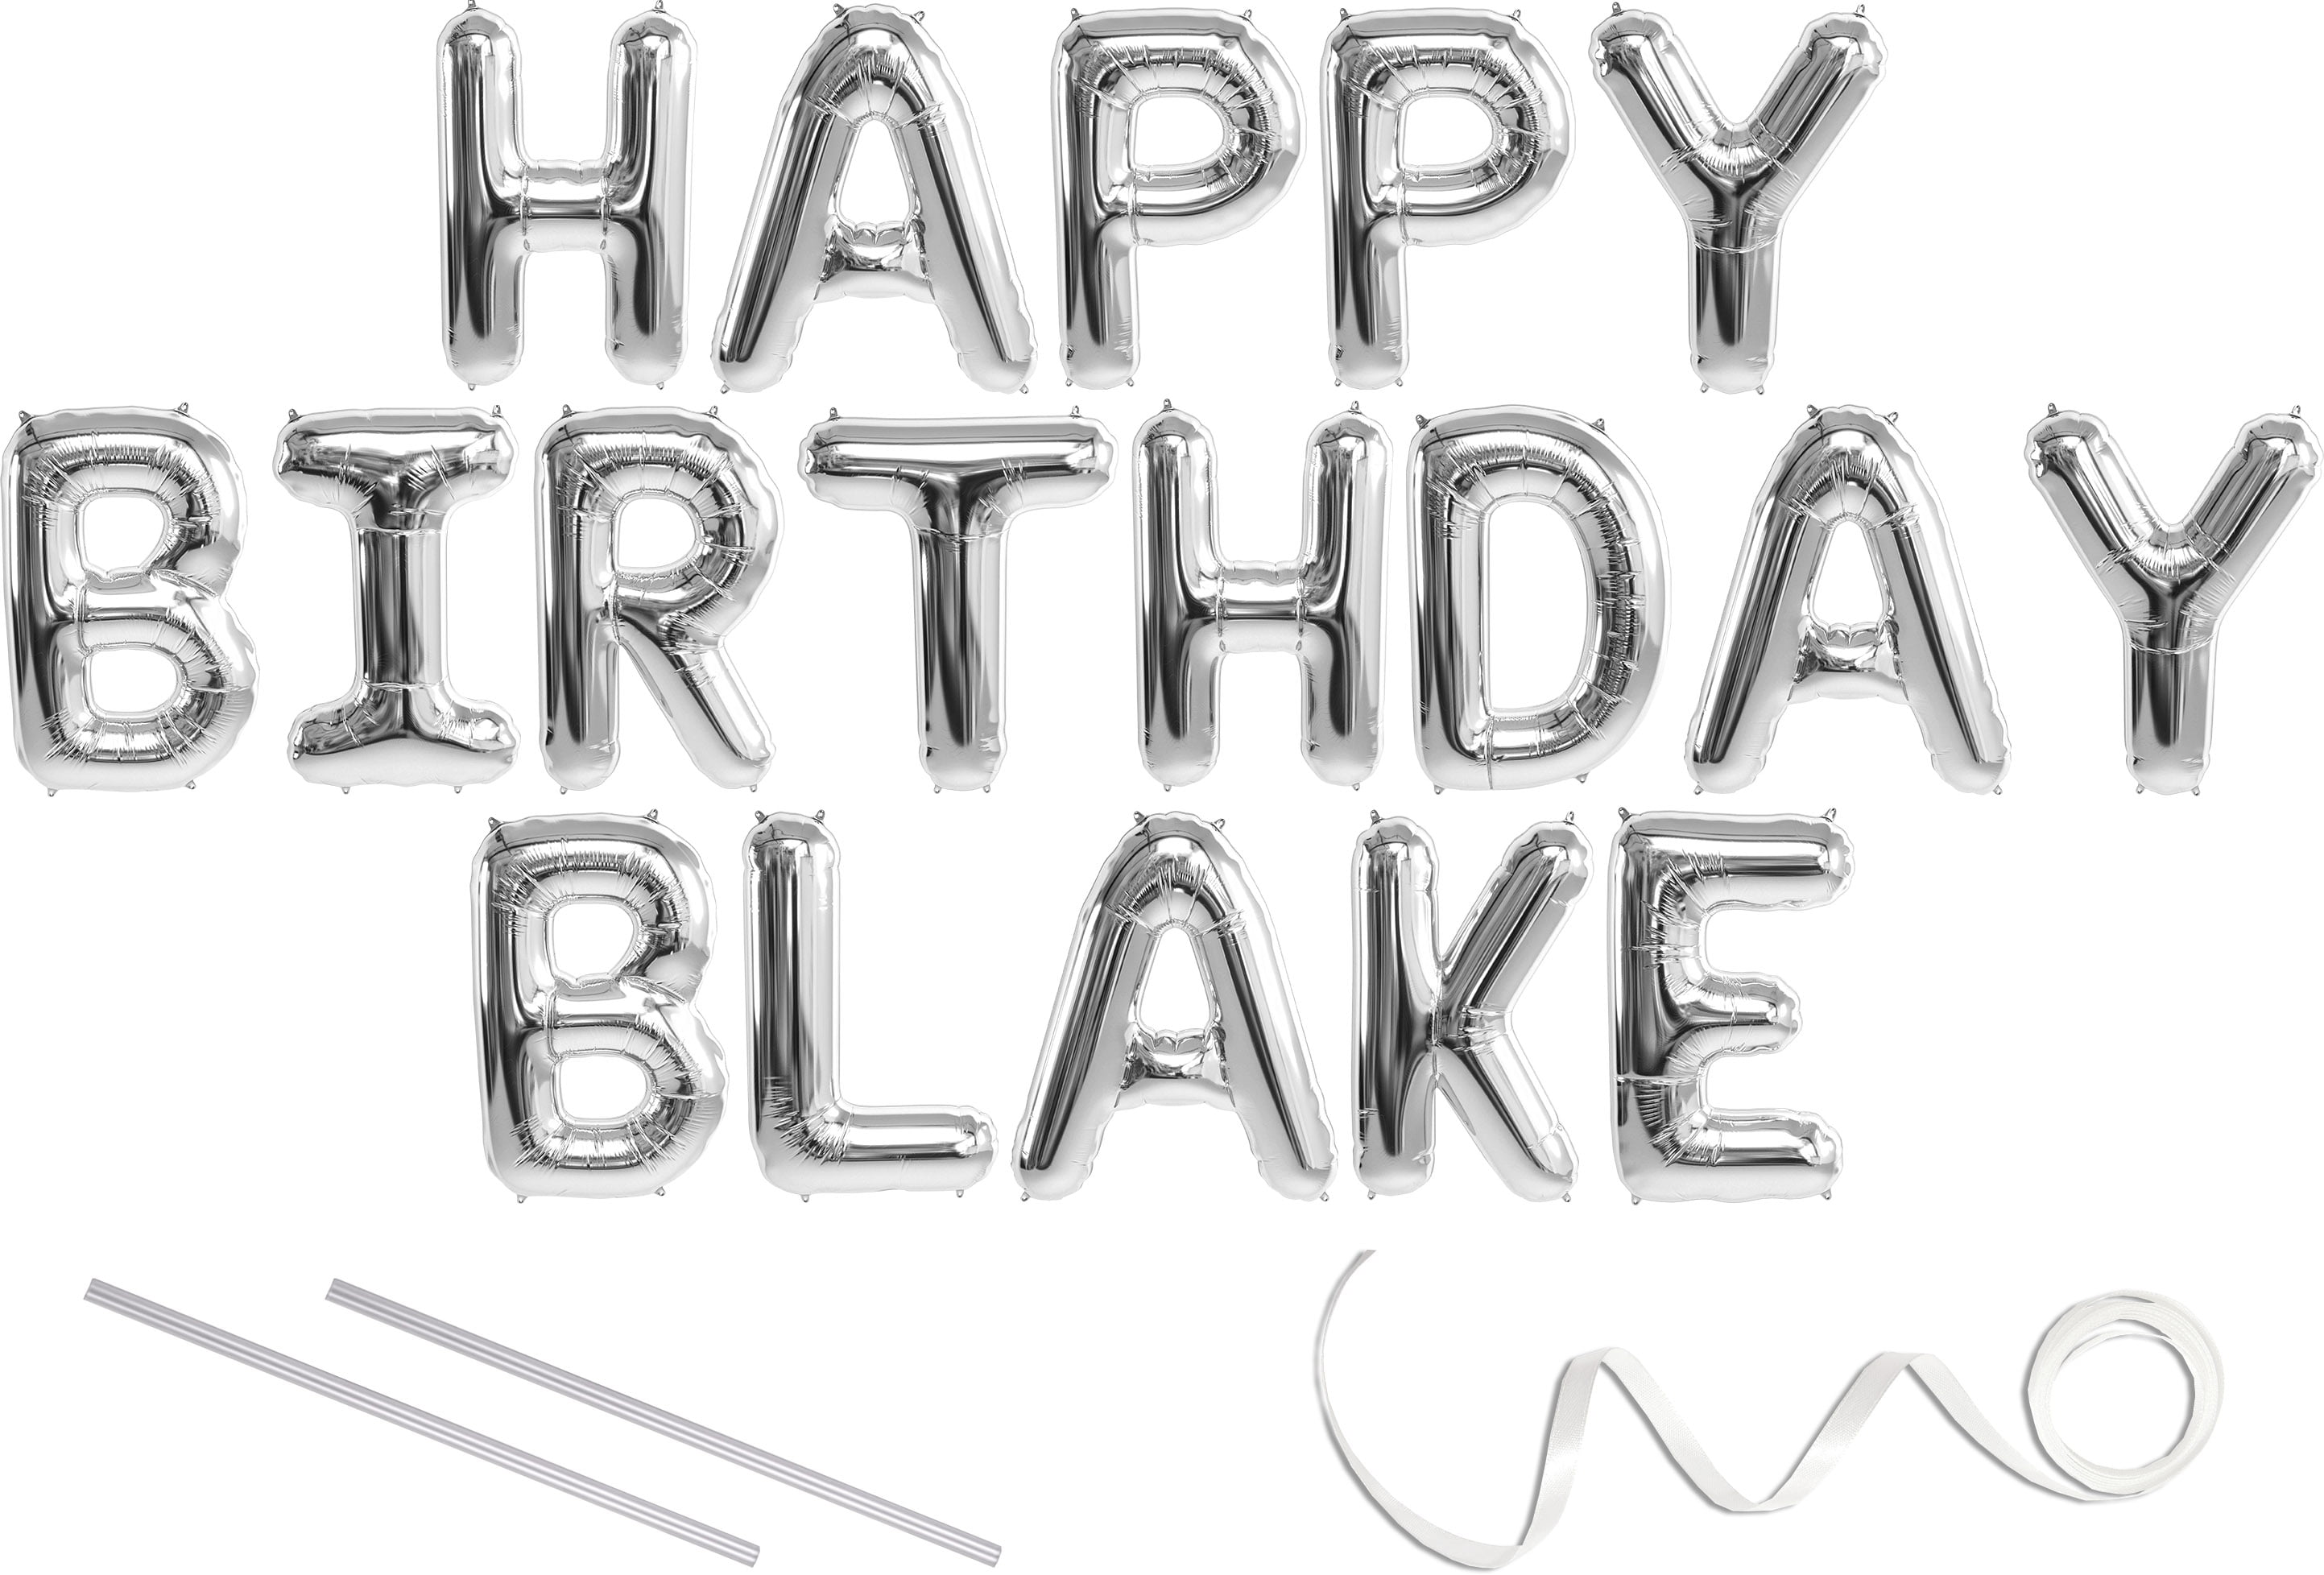 Blake blossom birthday